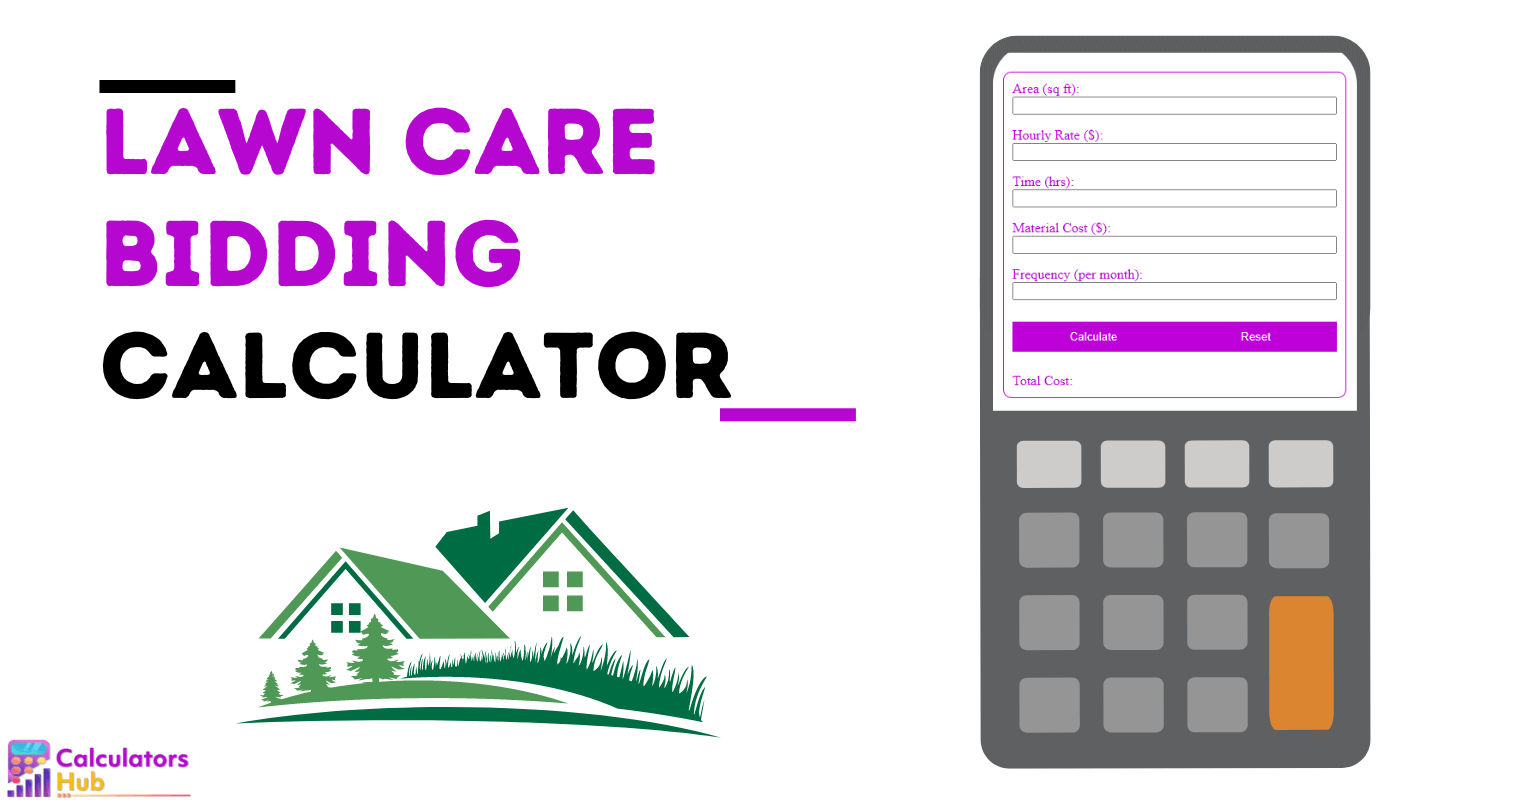 Lawn Care Bidding Calculator